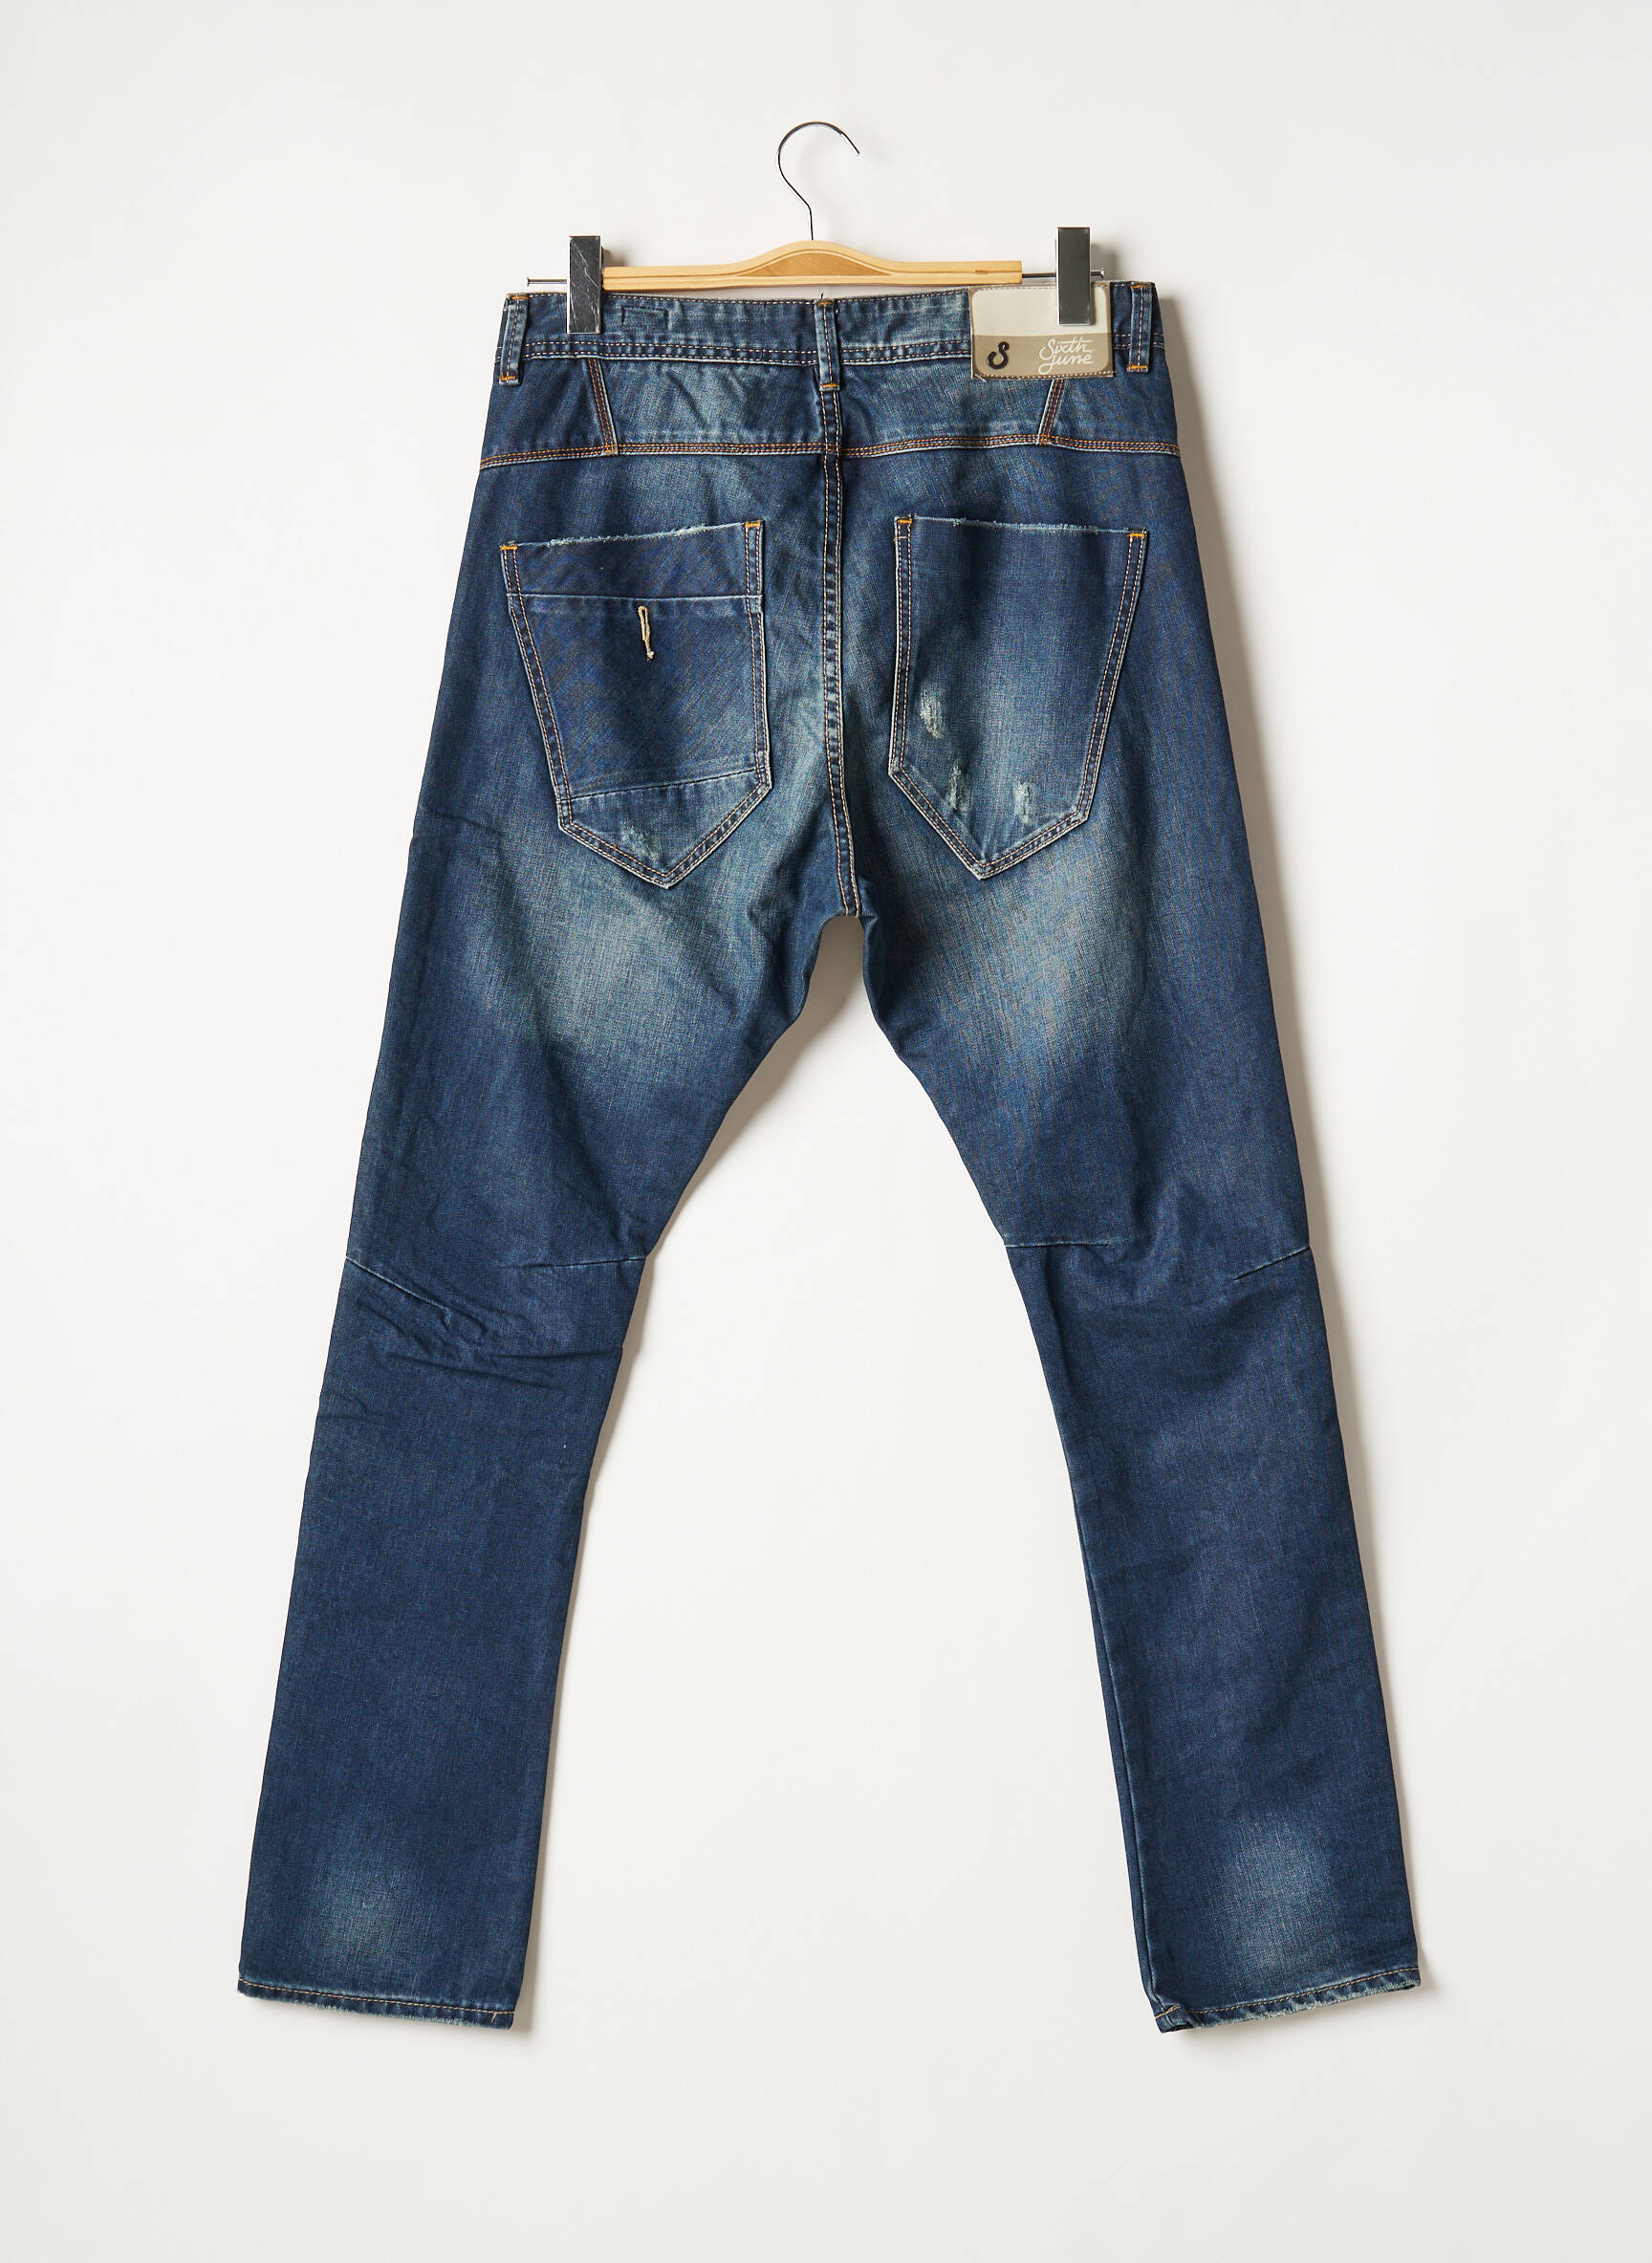 Jeans slim KAPORAL W29 T 38-40 Homme Vêtements Kaporal Homme Jeans Kaporal Homme Jeans slim Kaporal Homme bleu Jeans slim Kaporal Homme 